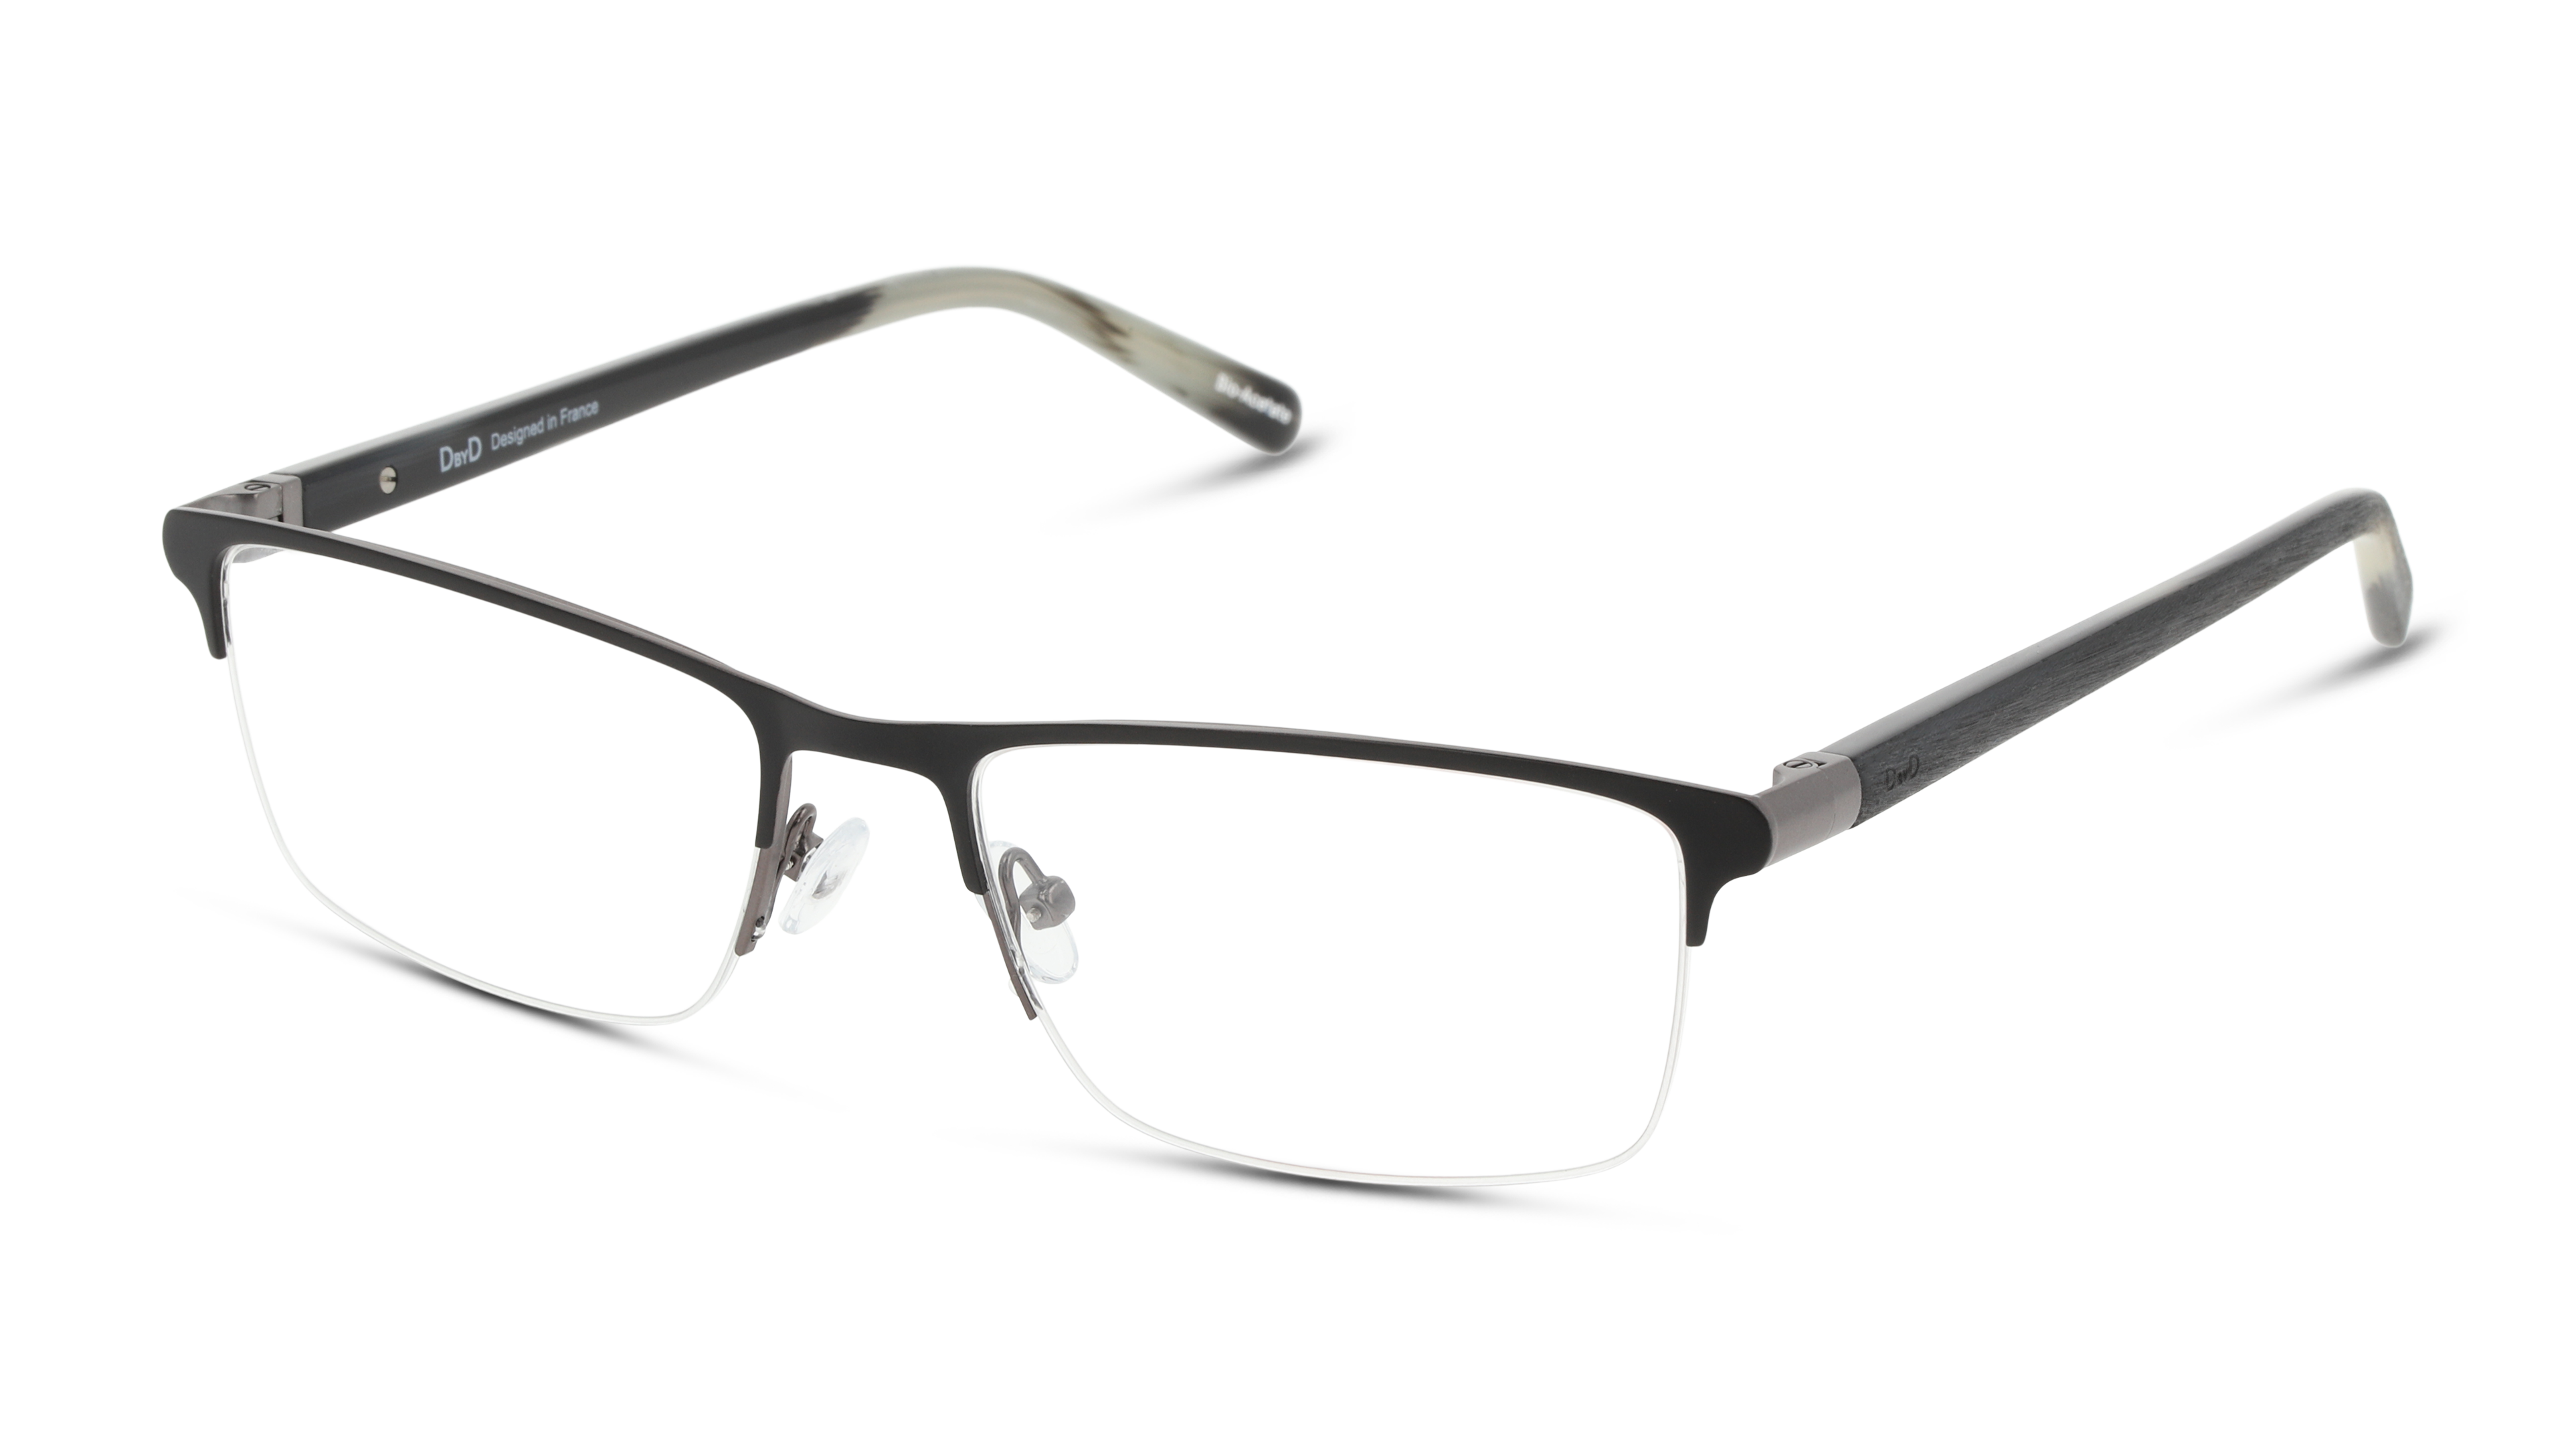 Angle_Left01 DbyD DB OM5077 Glasses Transparent / Black